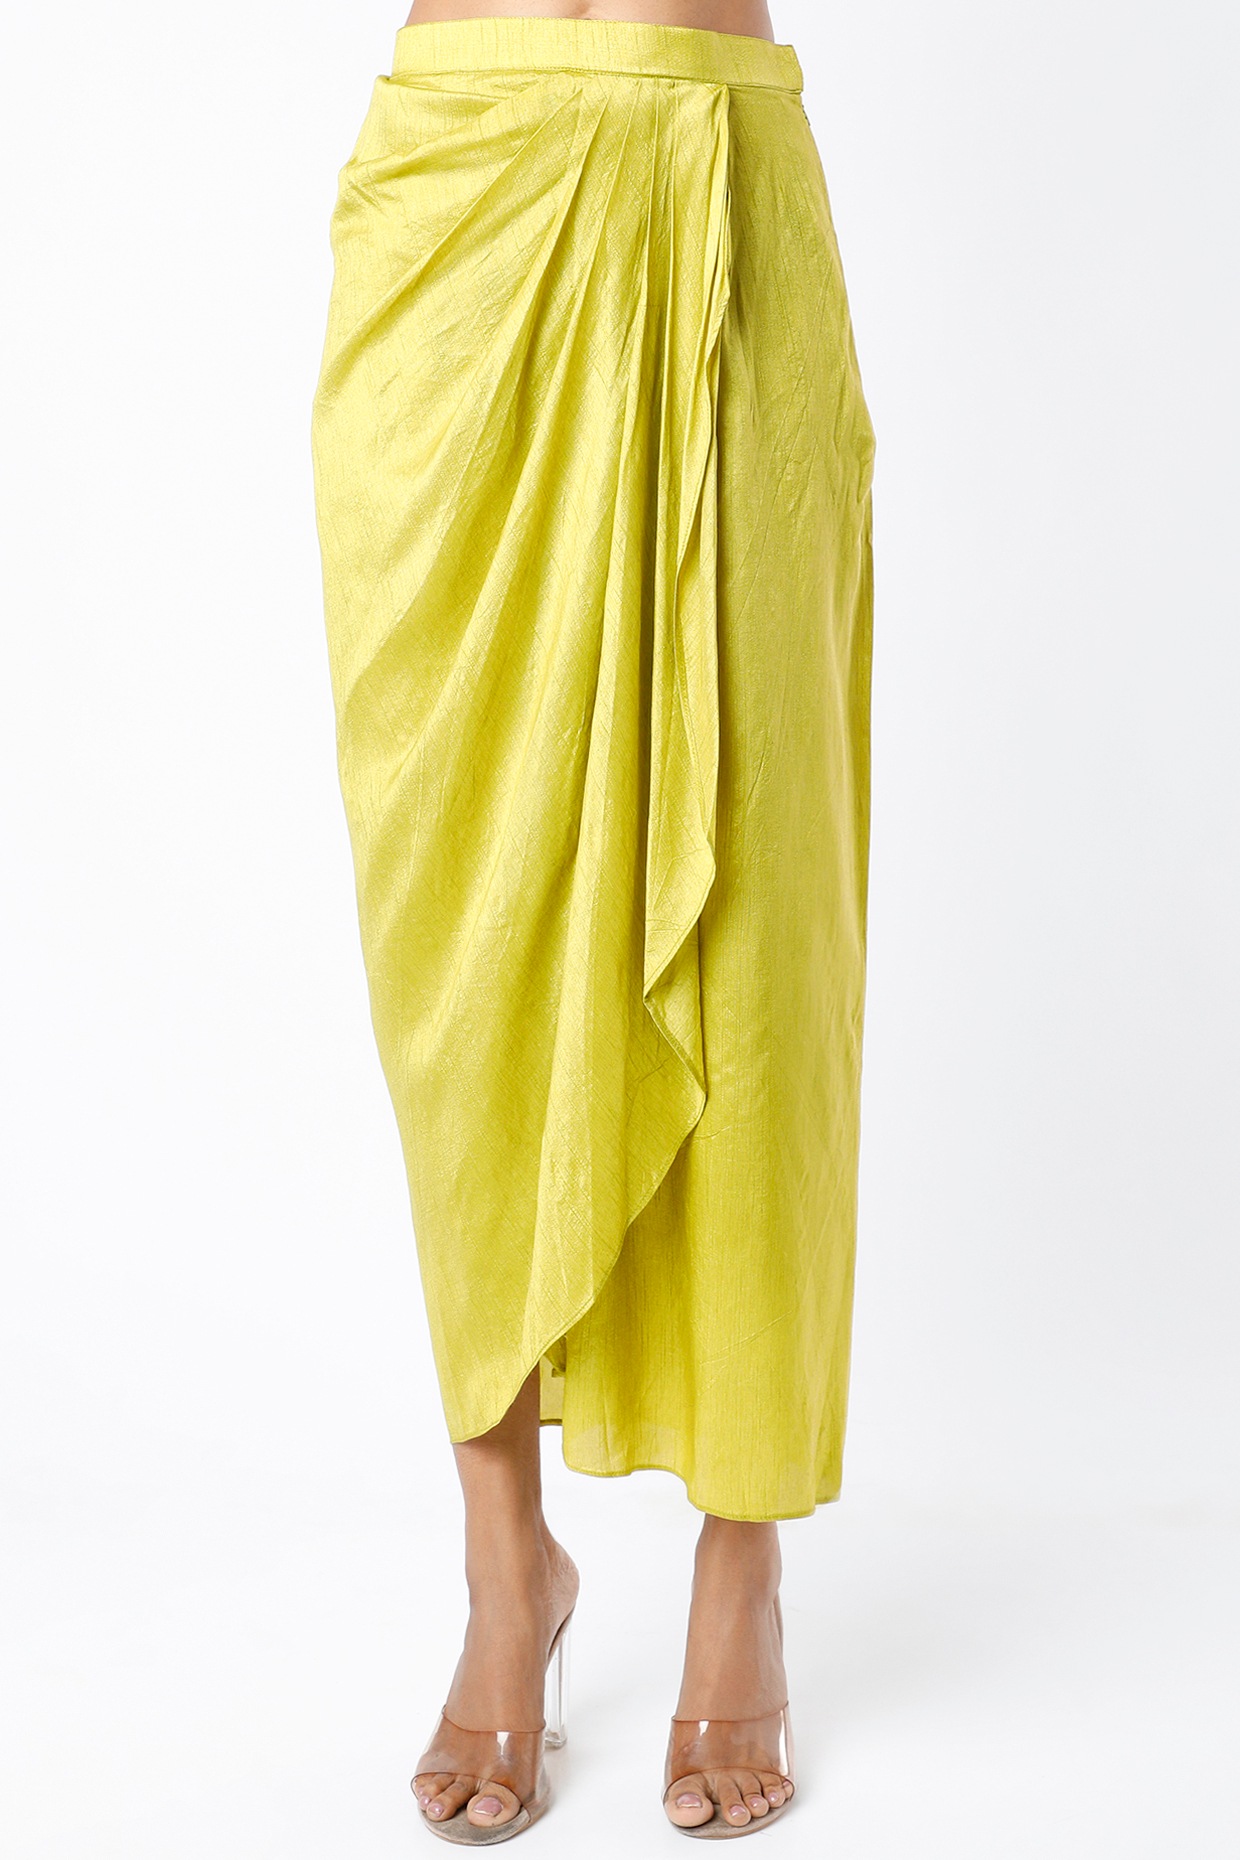 Women's green paisley print ruffled, draped skirt